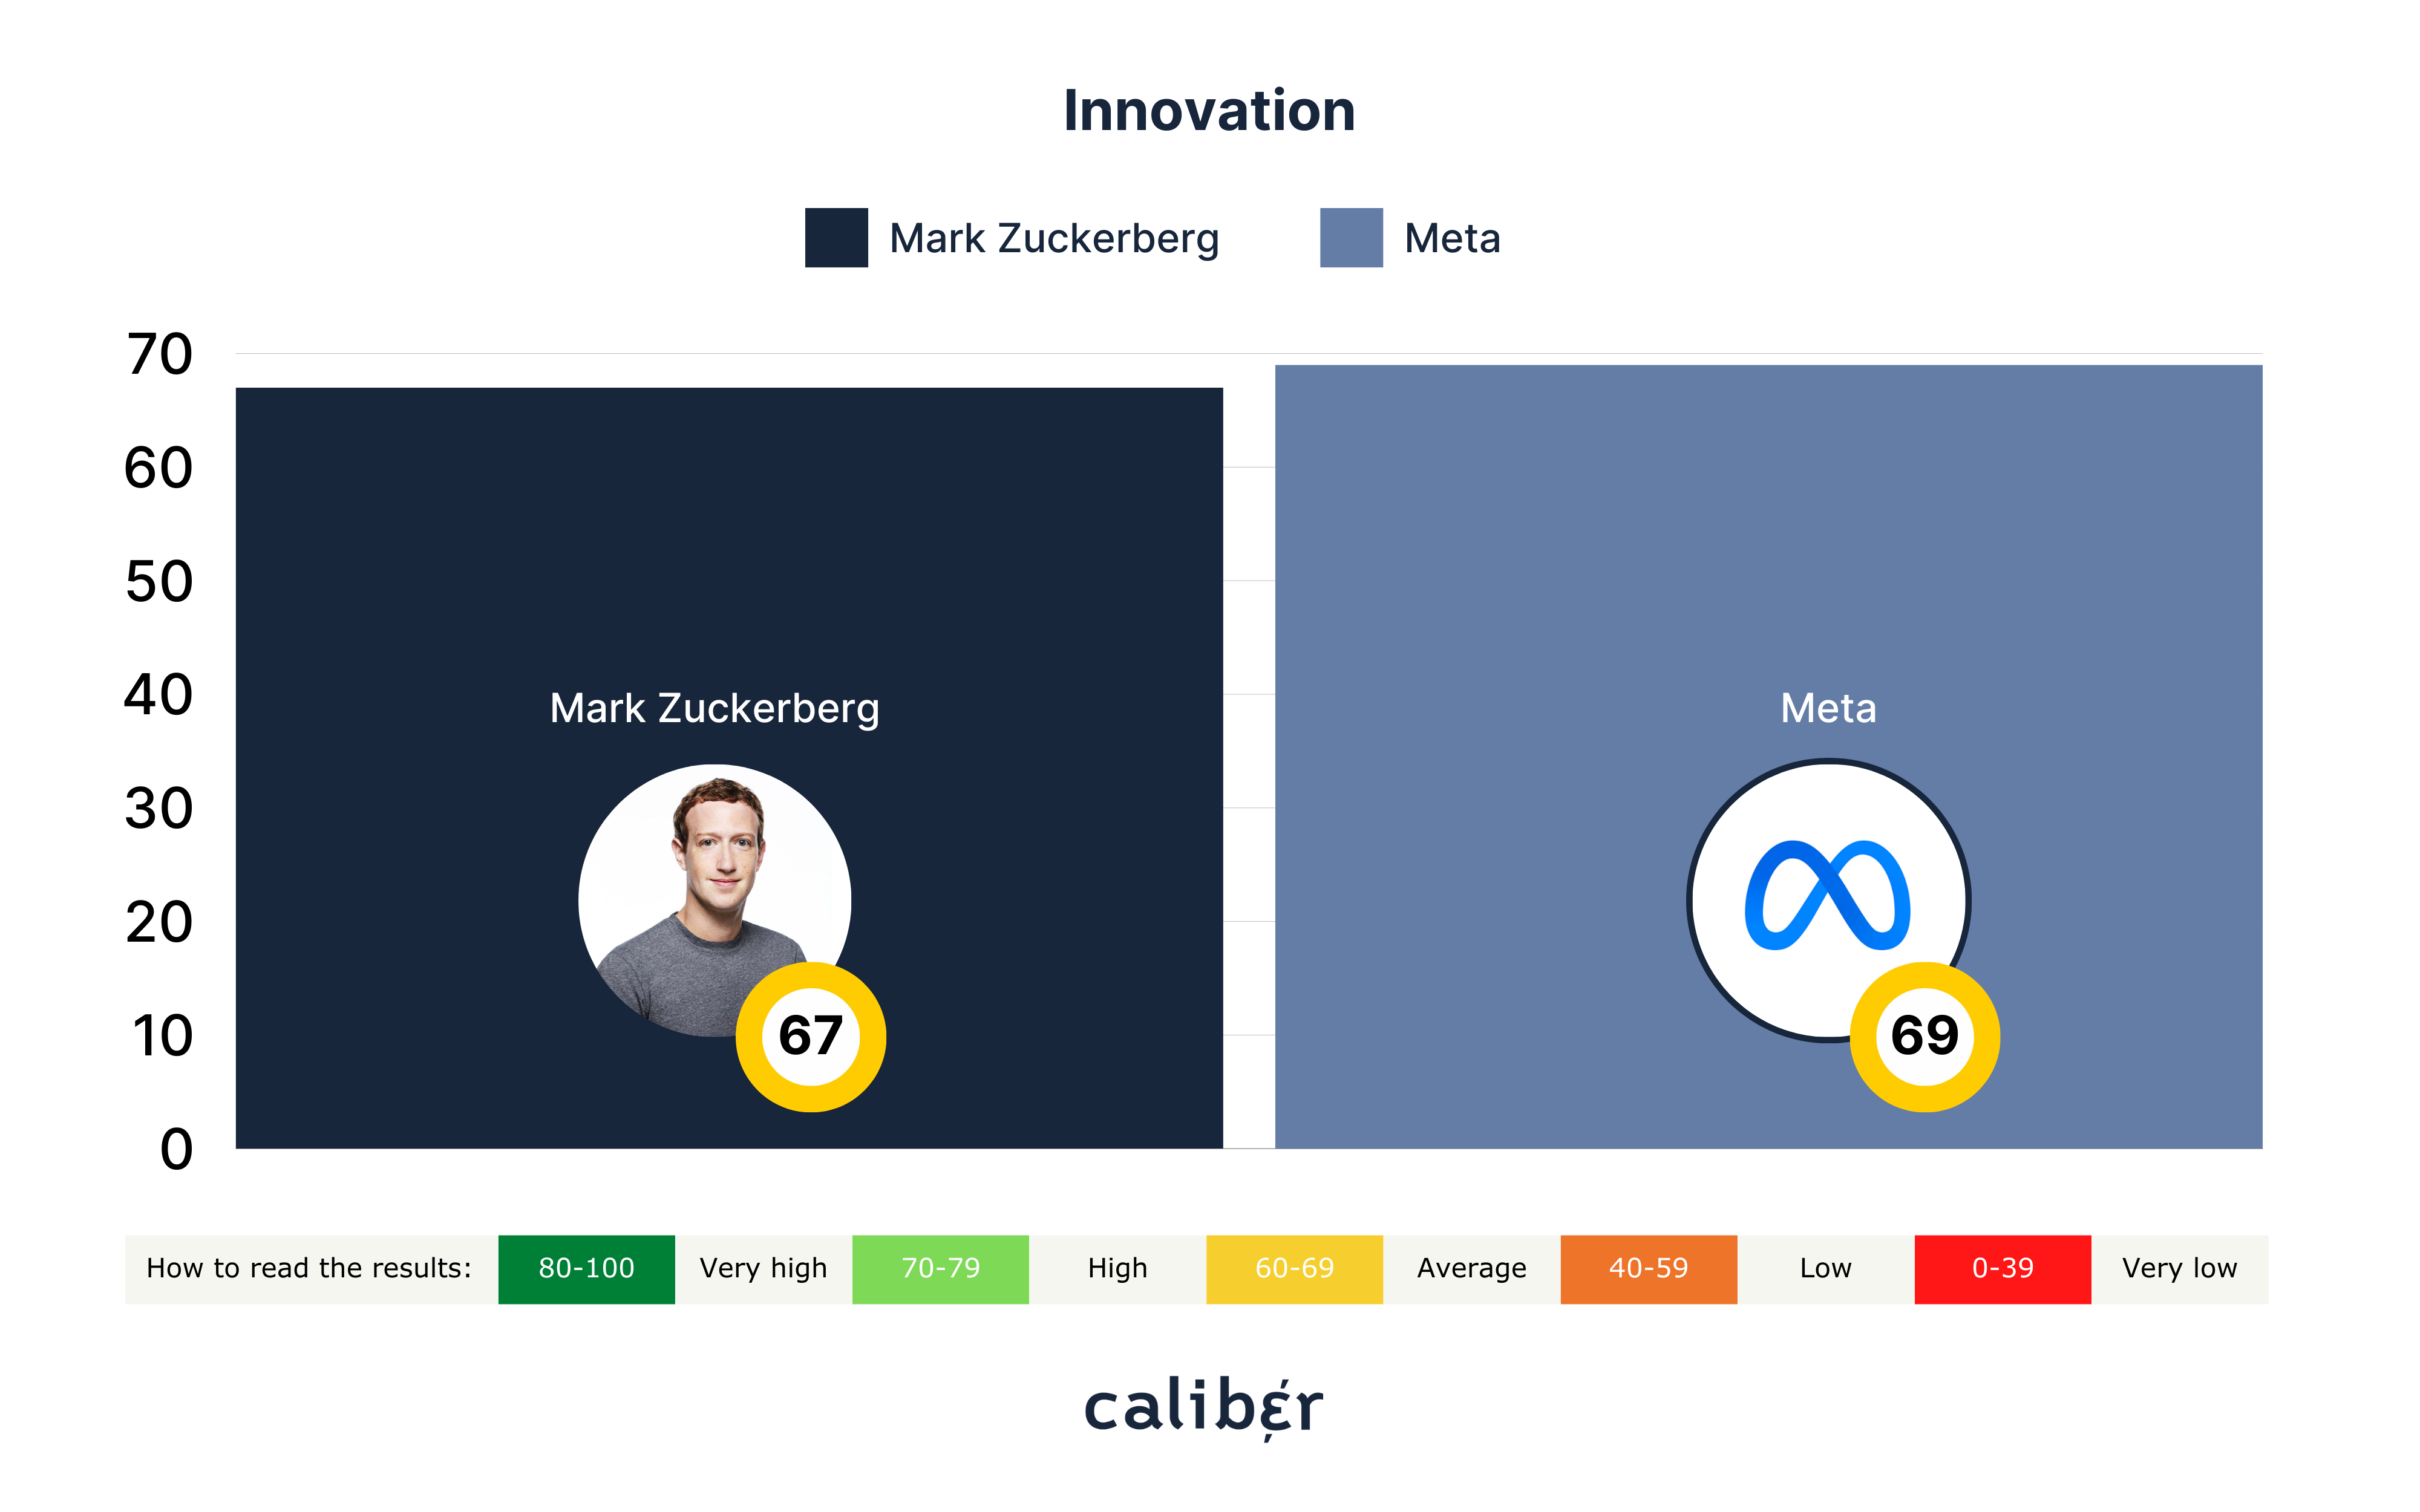 Mark Zuckerberg Innovation Score